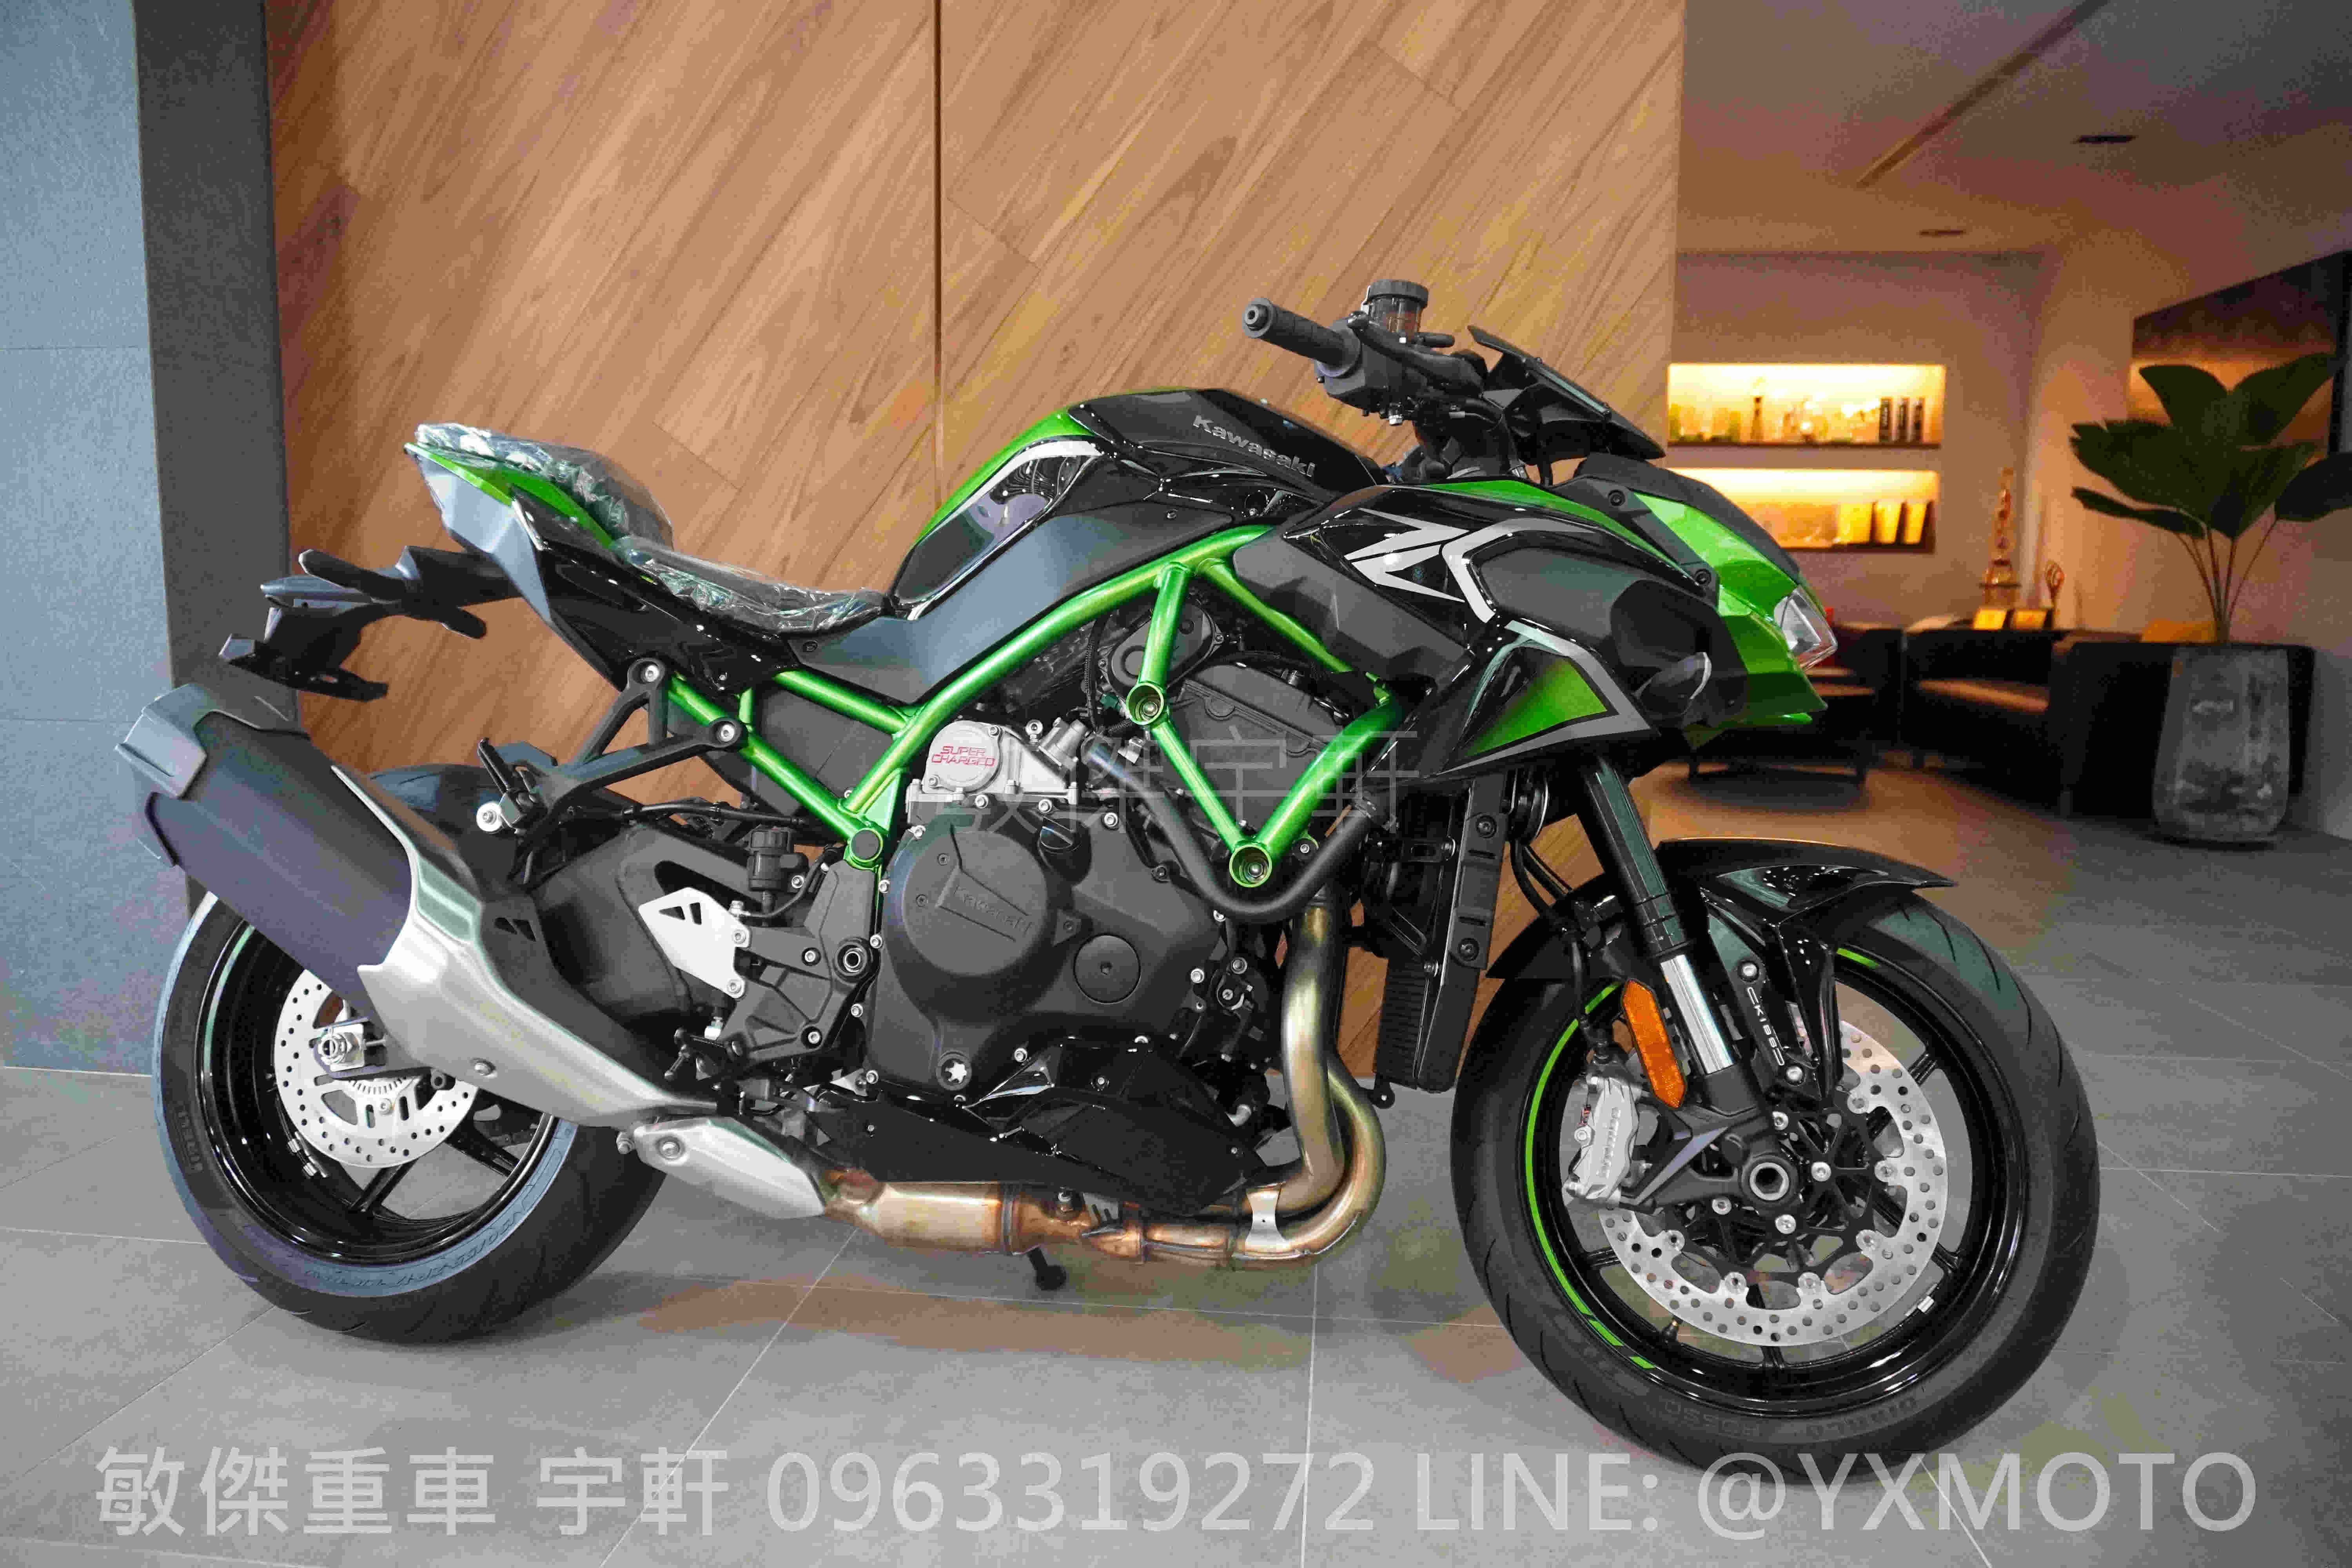 KAWASAKI Z H2新車出售中 【敏傑宇軒】2021 綠色 Kawasaki ZH2 機械增壓街跑 總代理公司車 | 重車銷售職人-宇軒 (敏傑)